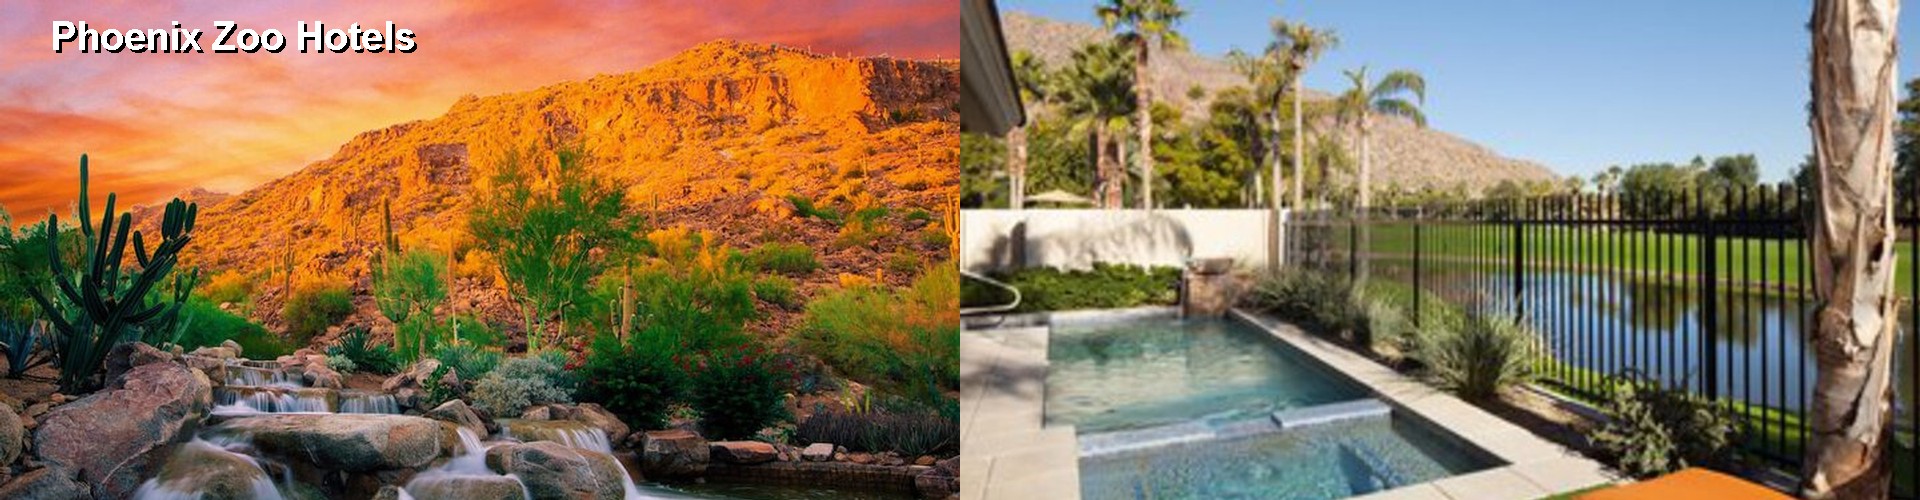 5 Best Hotels near Phoenix Zoo